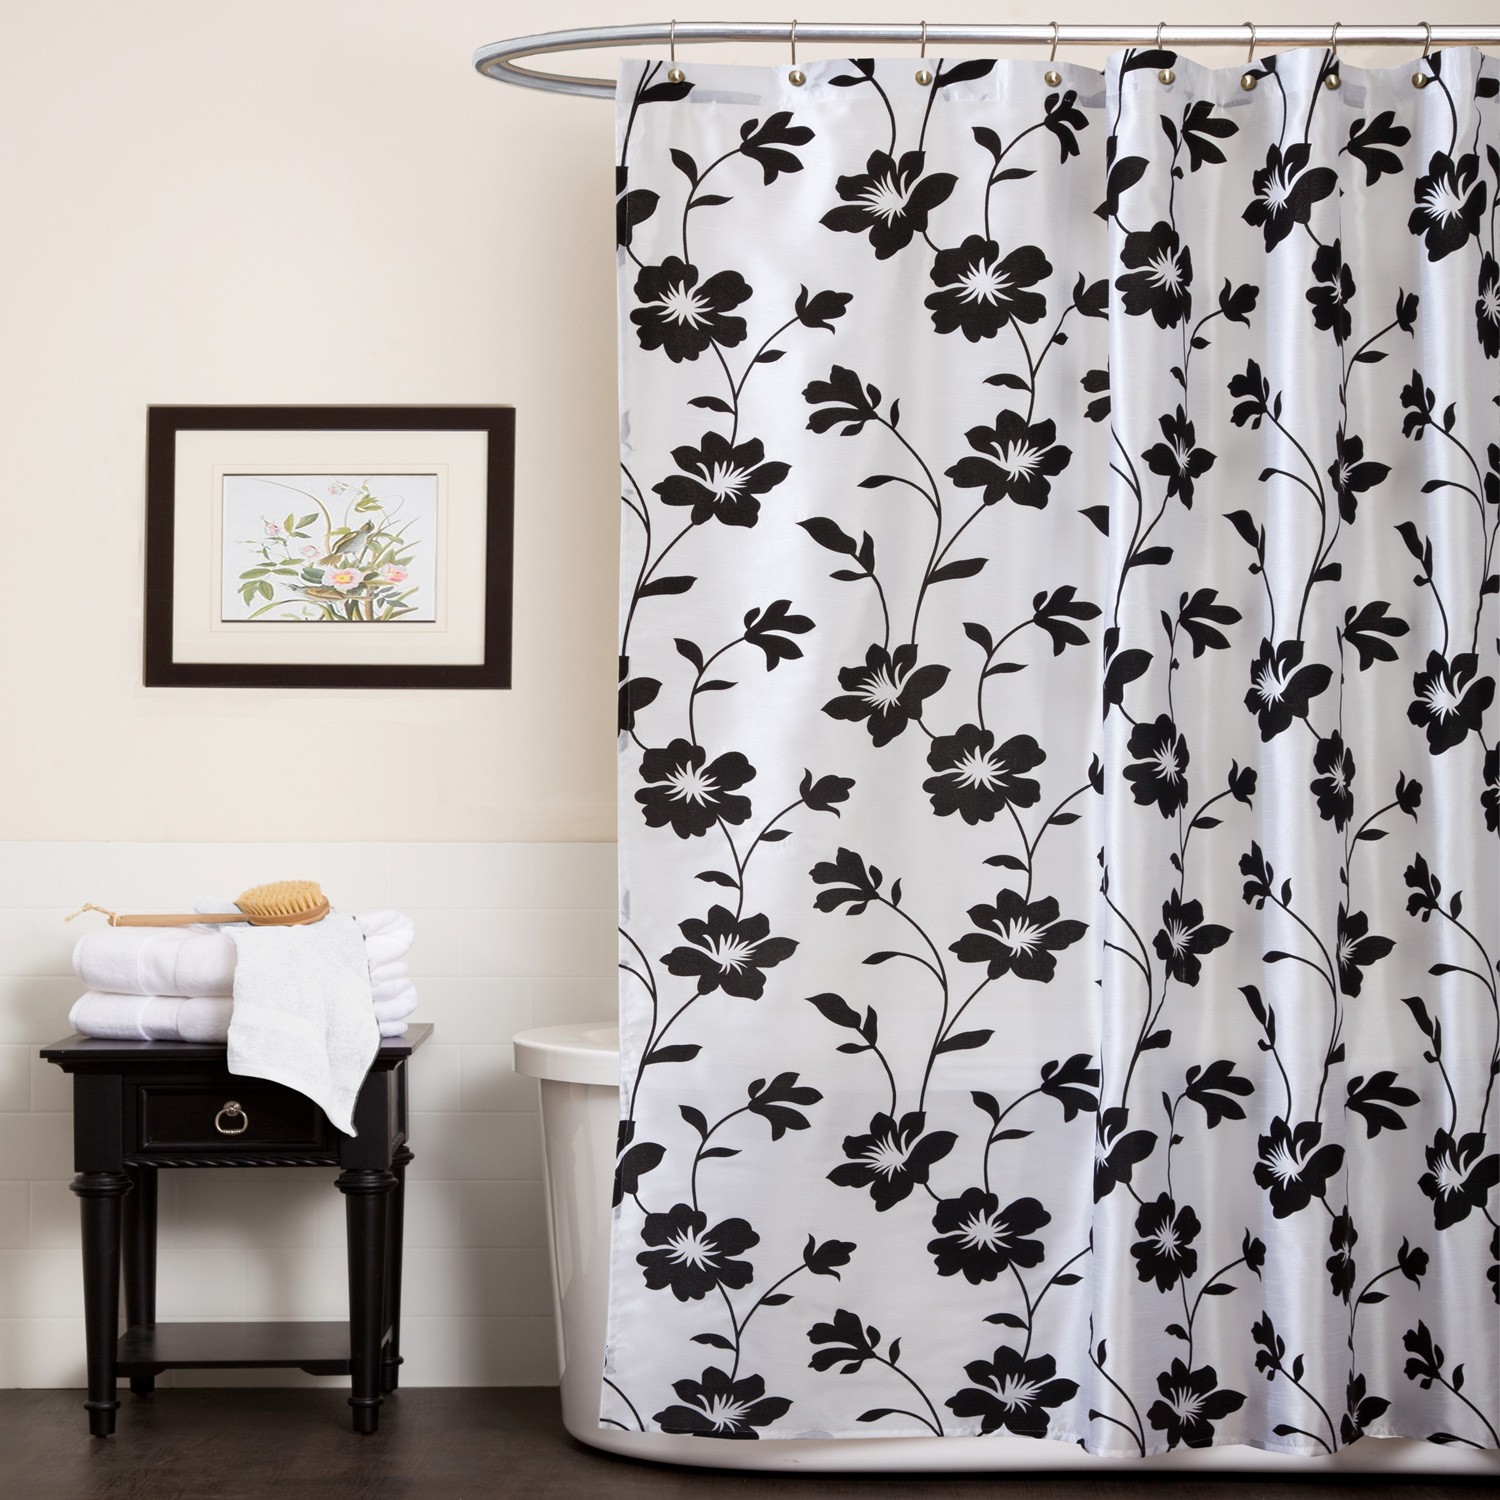 Black white shower curtain furniture ideas deltaangelgroup